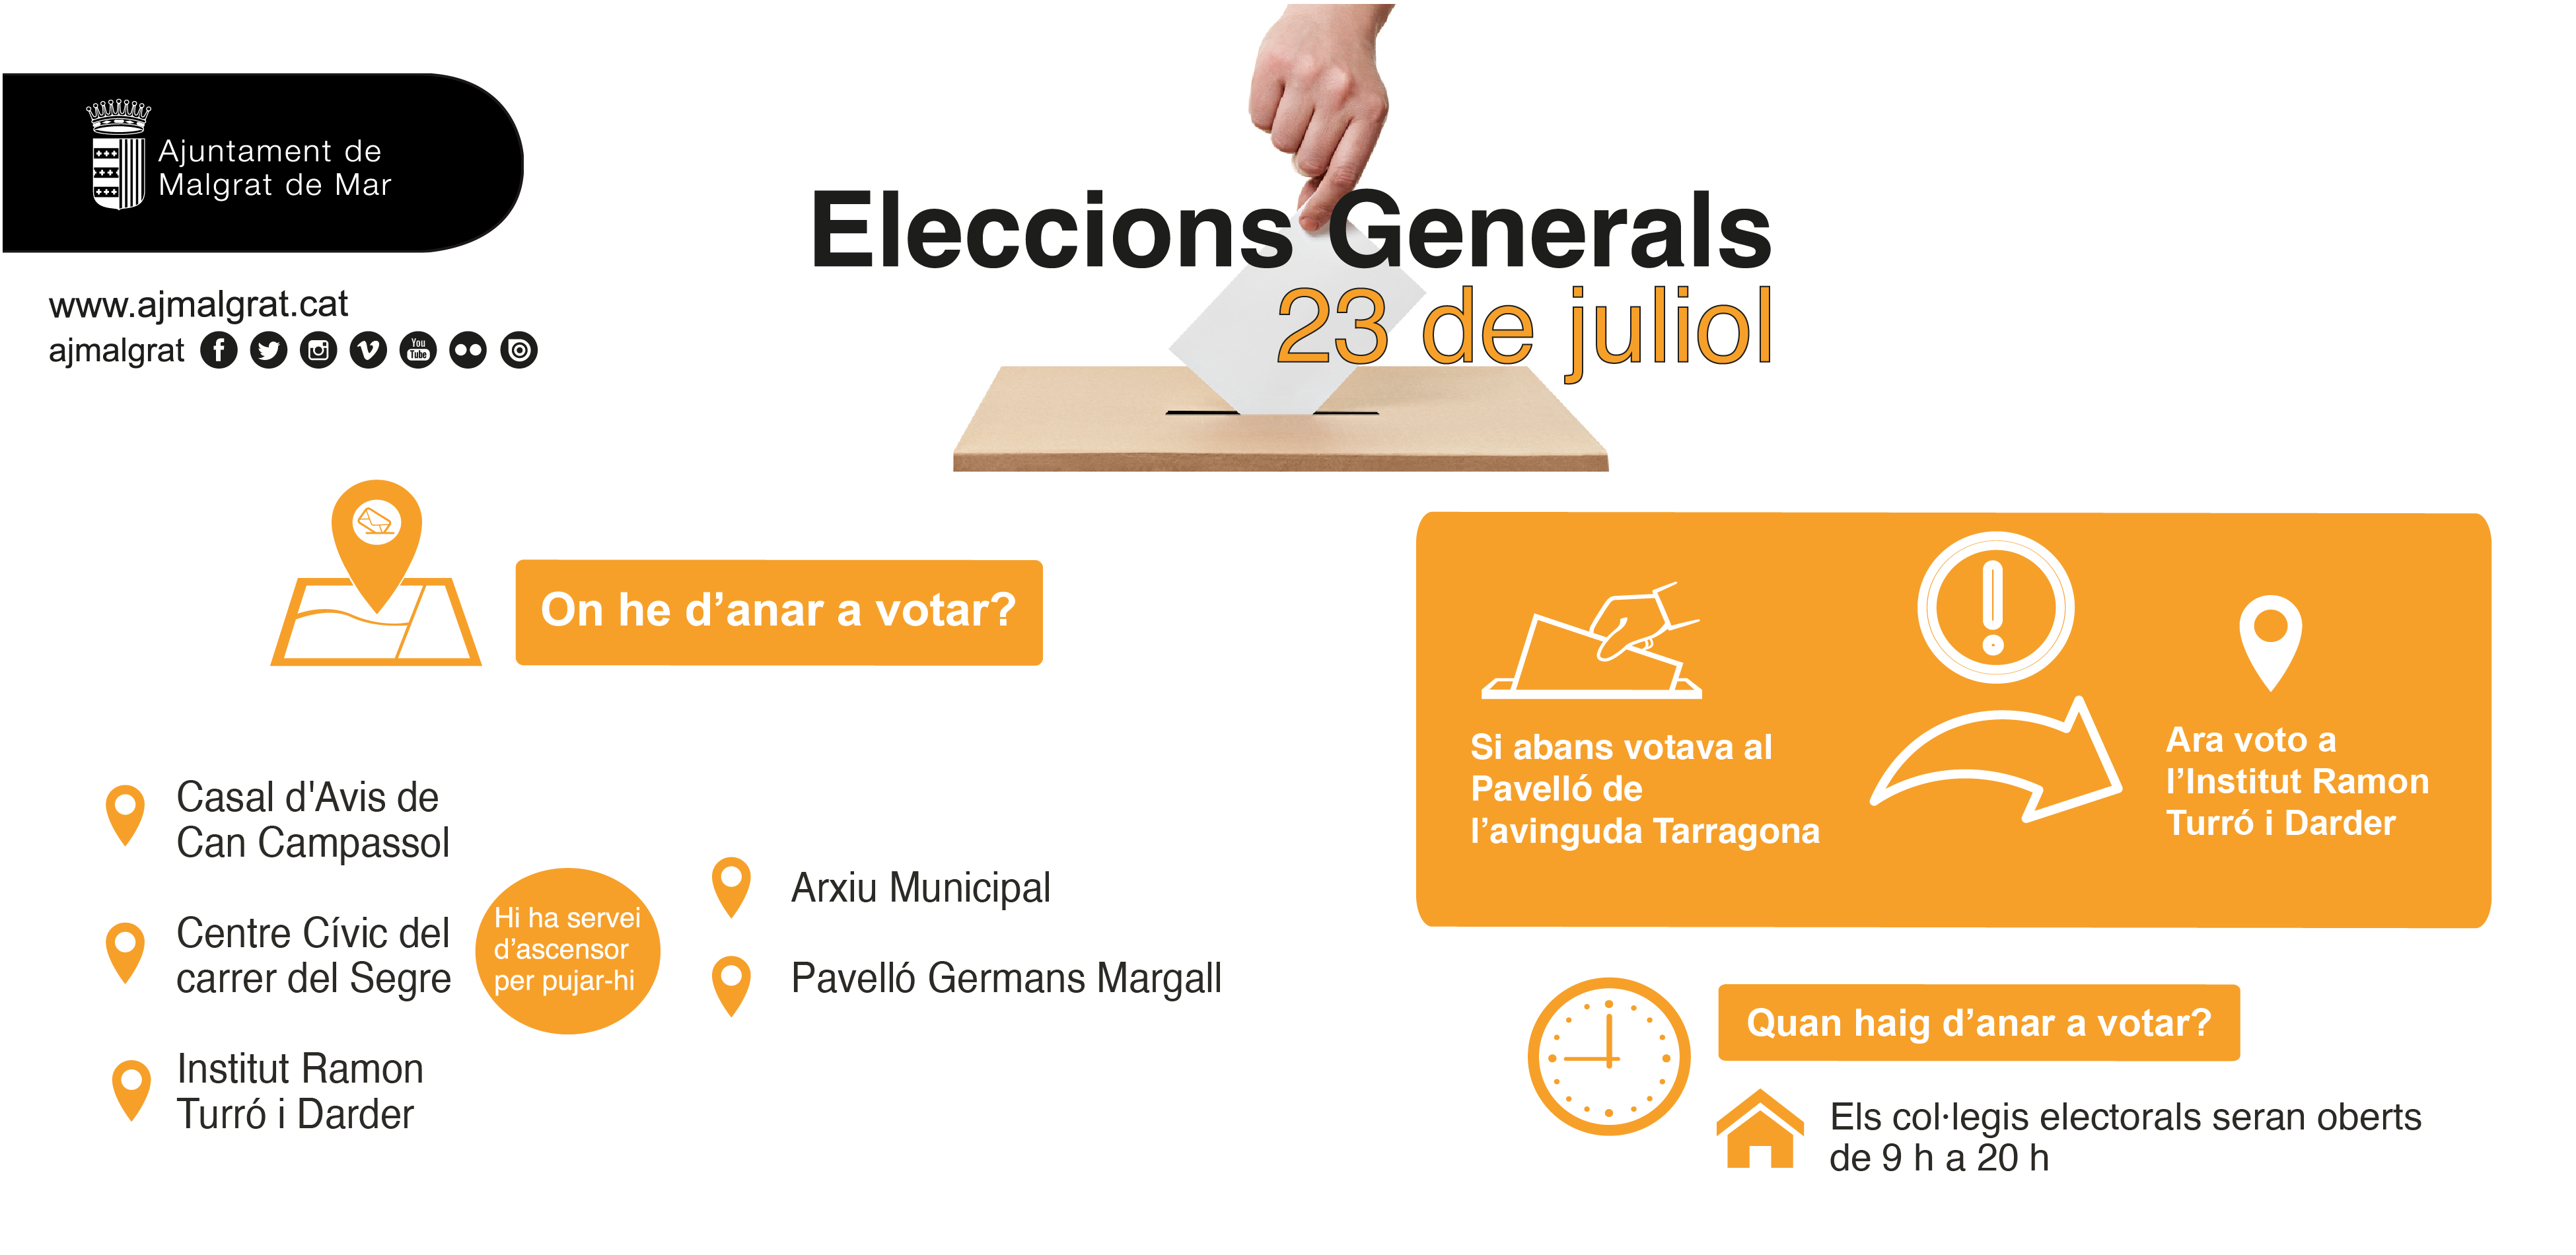 14.031 malgratenques i malgratencs cridats a les urnes a les Eleccions Generals de diumenge